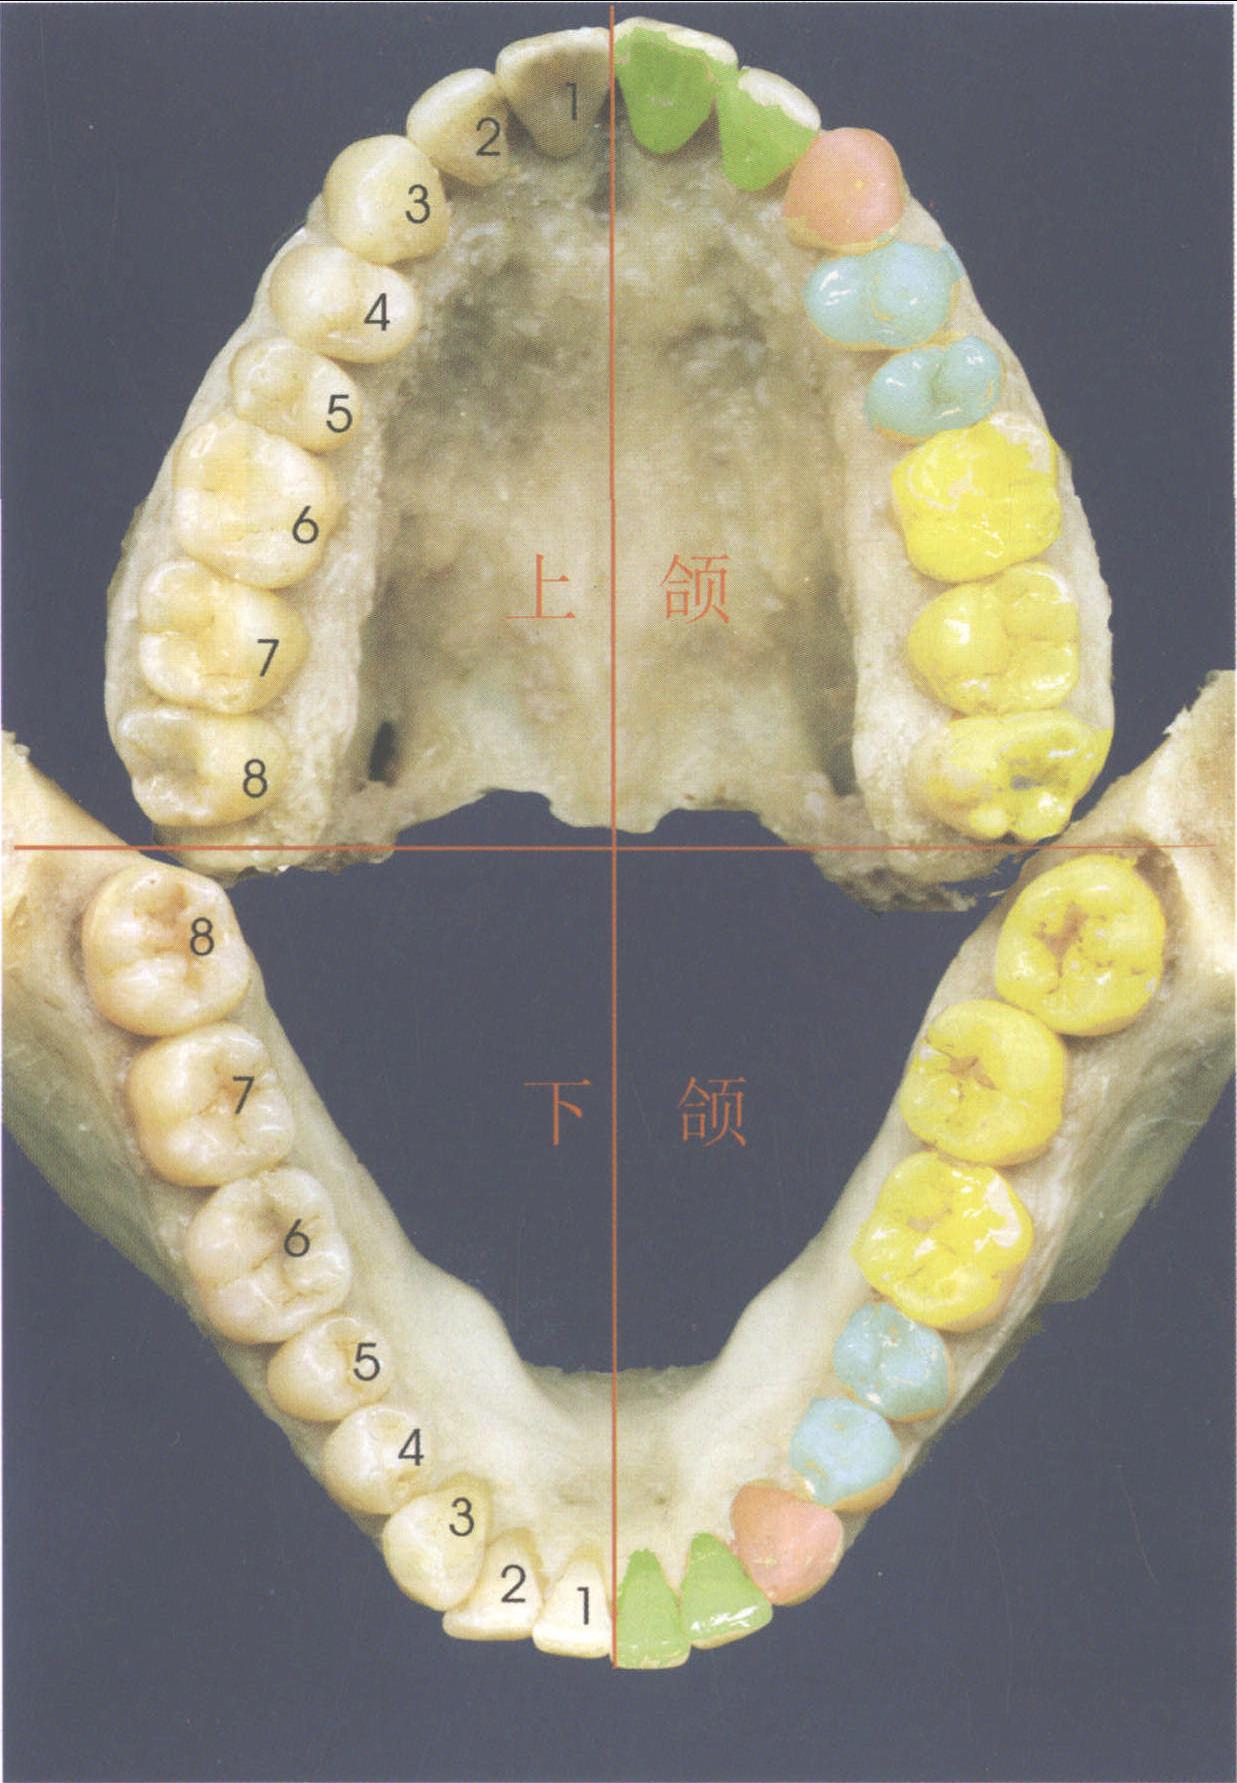 左下颌第一磨牙解剖图图片